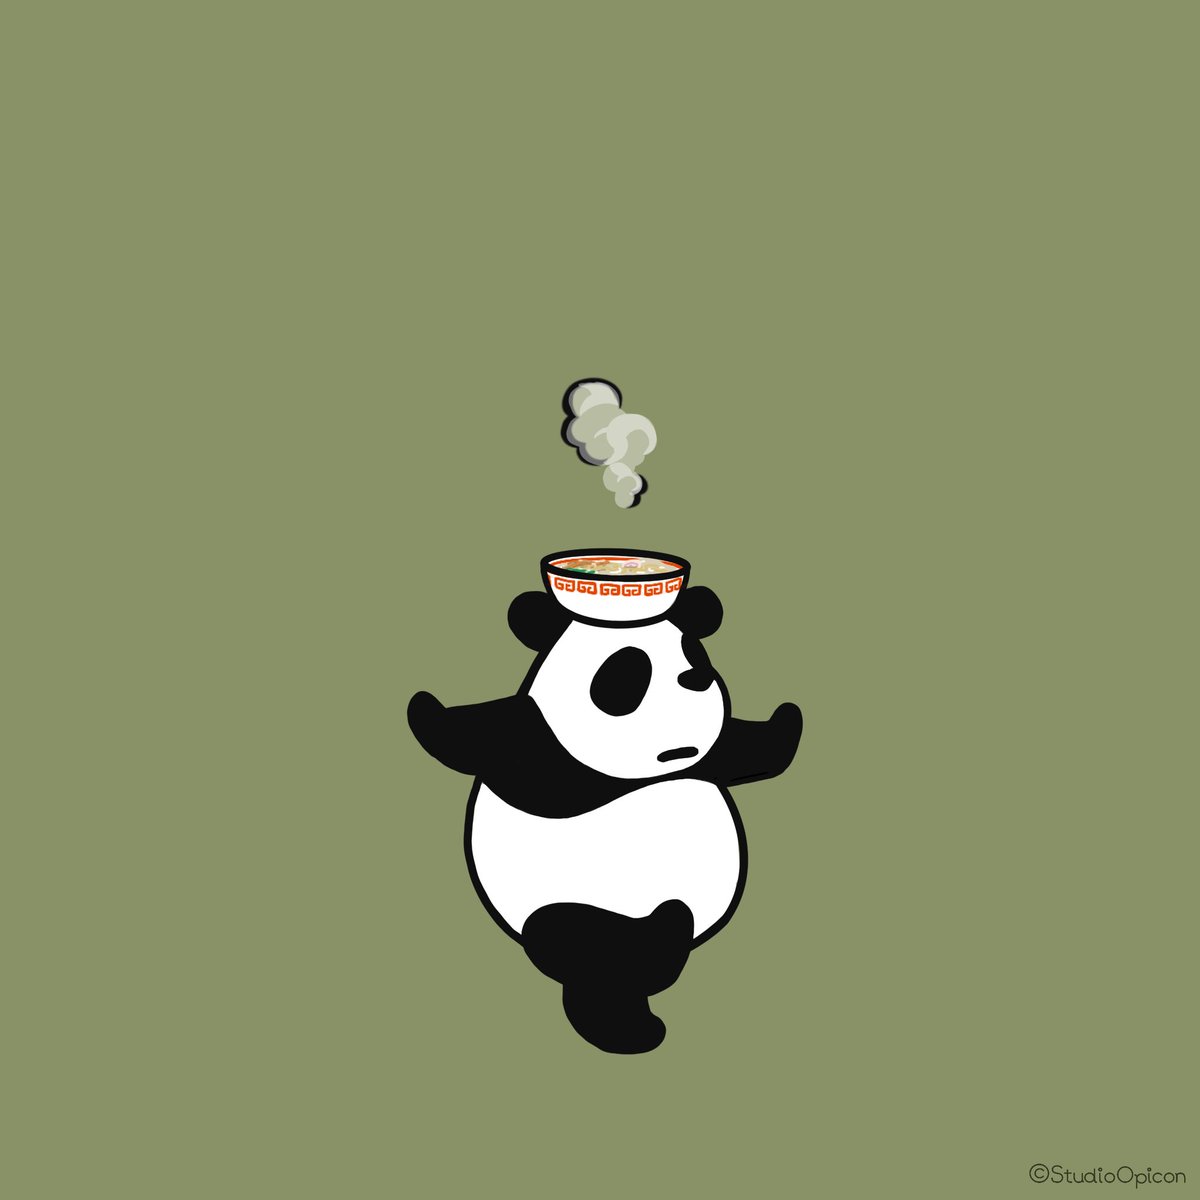 Studioopicon 出前パンダ イラスト アート 絵 キャラクター パンダ 出前 デリバリー ラーメン 動物イラスト 和み系キャラ ゆるいイラスト Illustration Art Drawing Character Panda Delivery Ramen Noodle Animalillustration